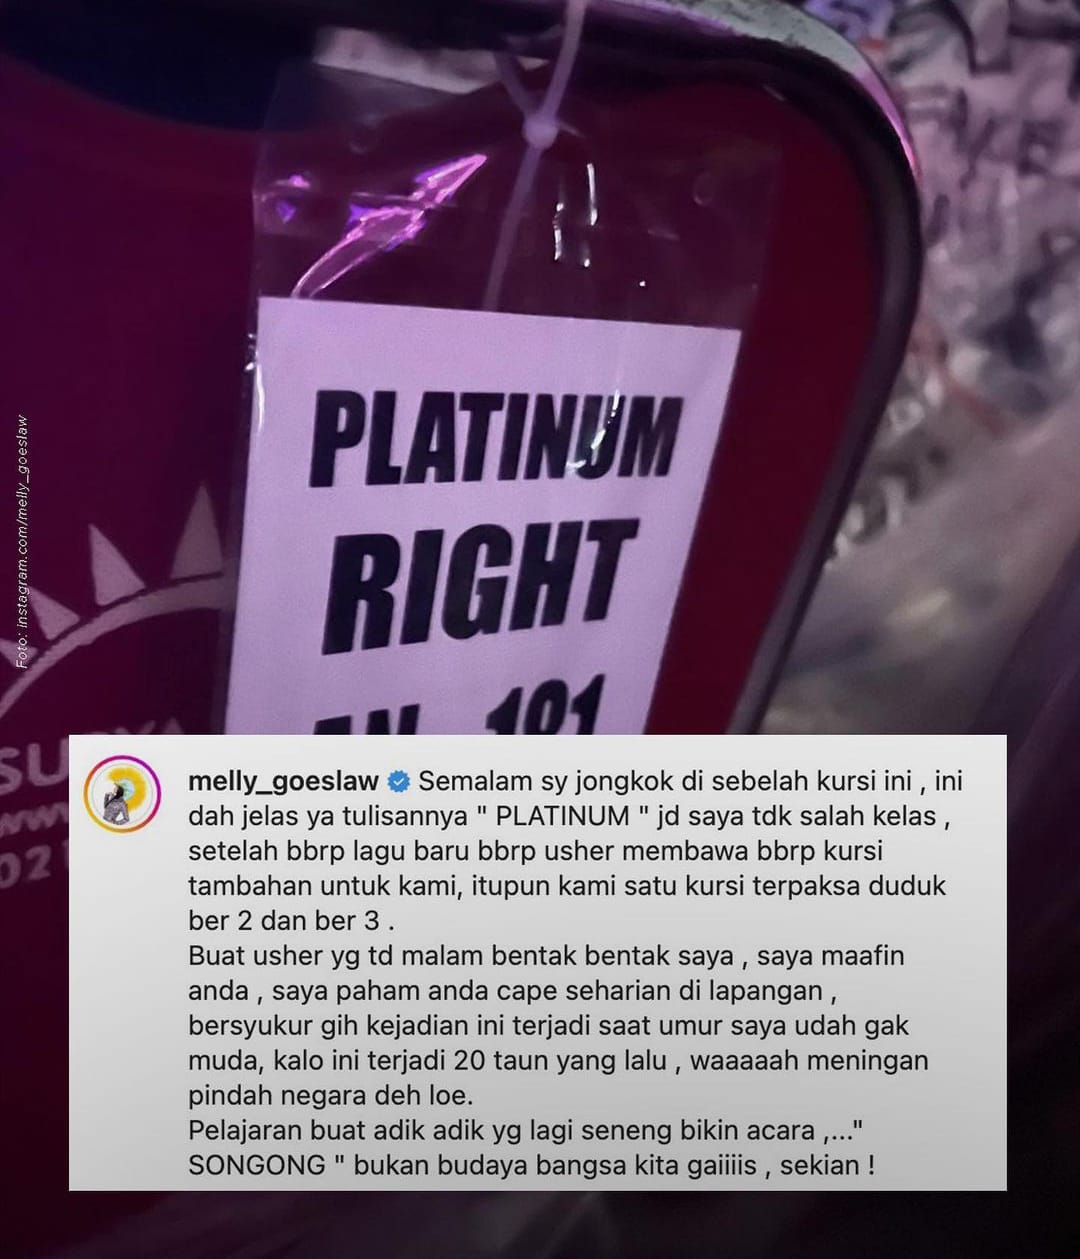 Konser BLACKPINK di Jakarta Berbuah Kekecewaan Fans: 'Songong Bukan Budaya Bangsa Kita!'